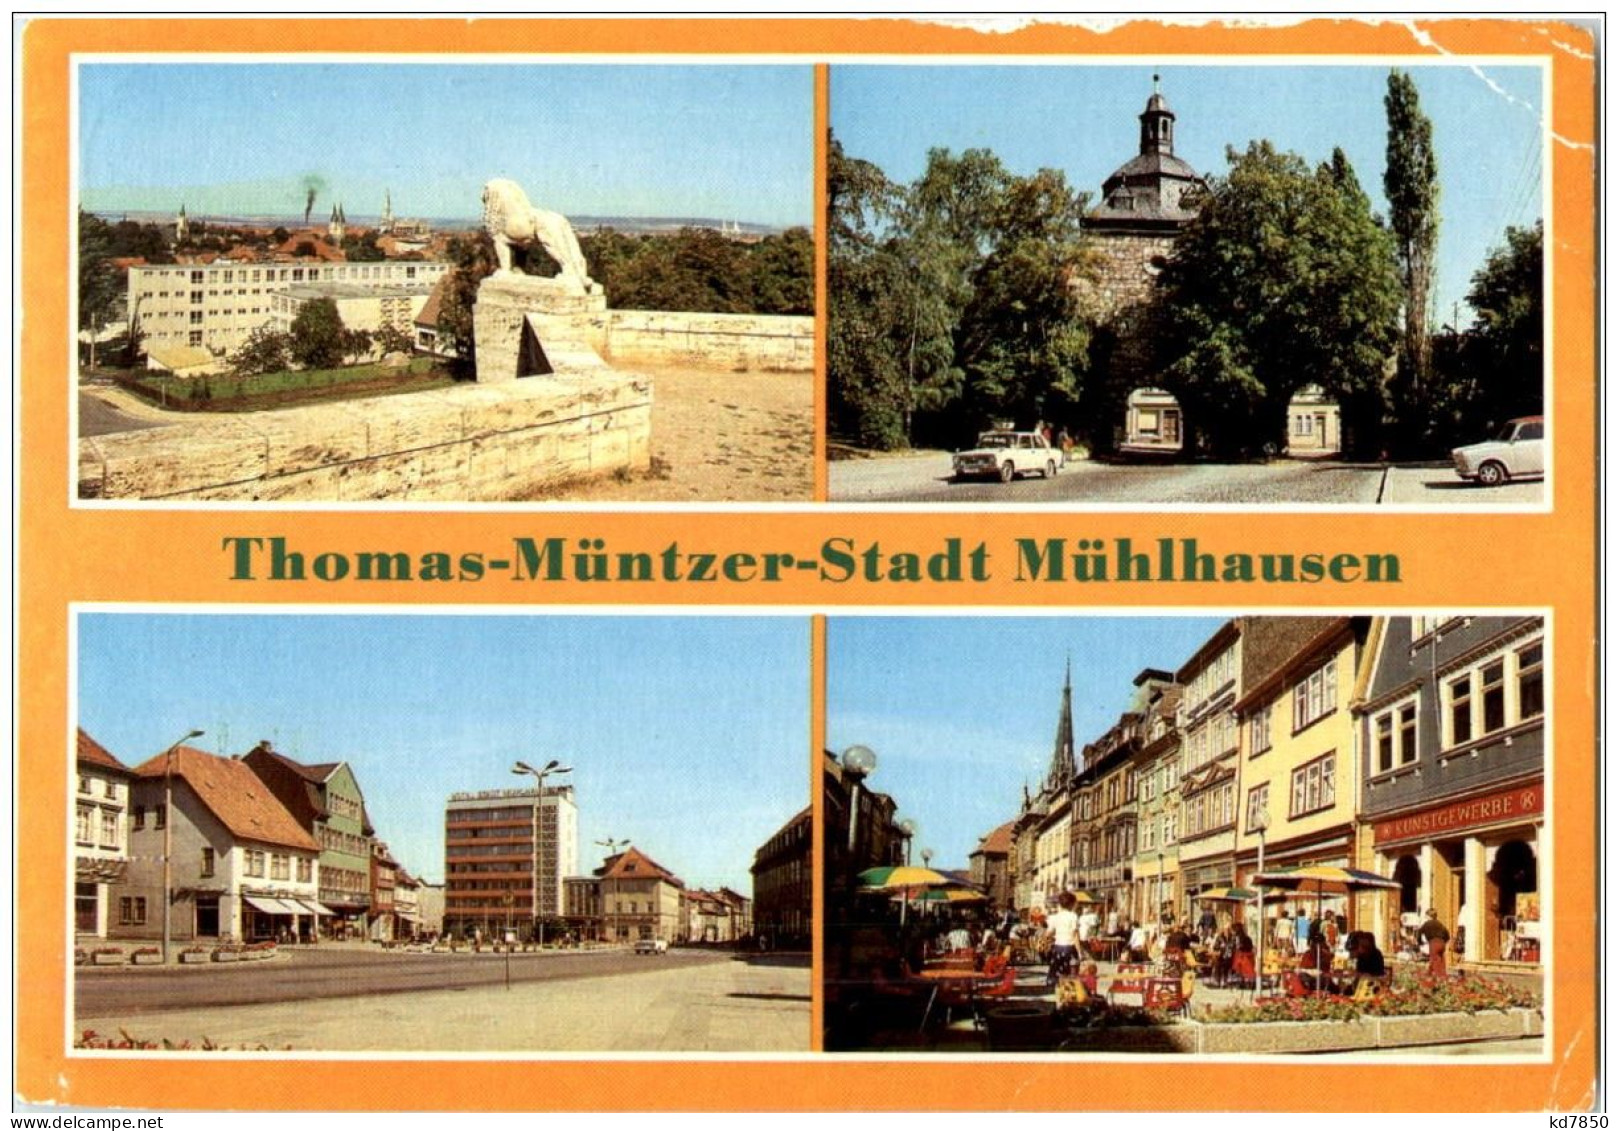 Mühlhausen - Muehlhausen